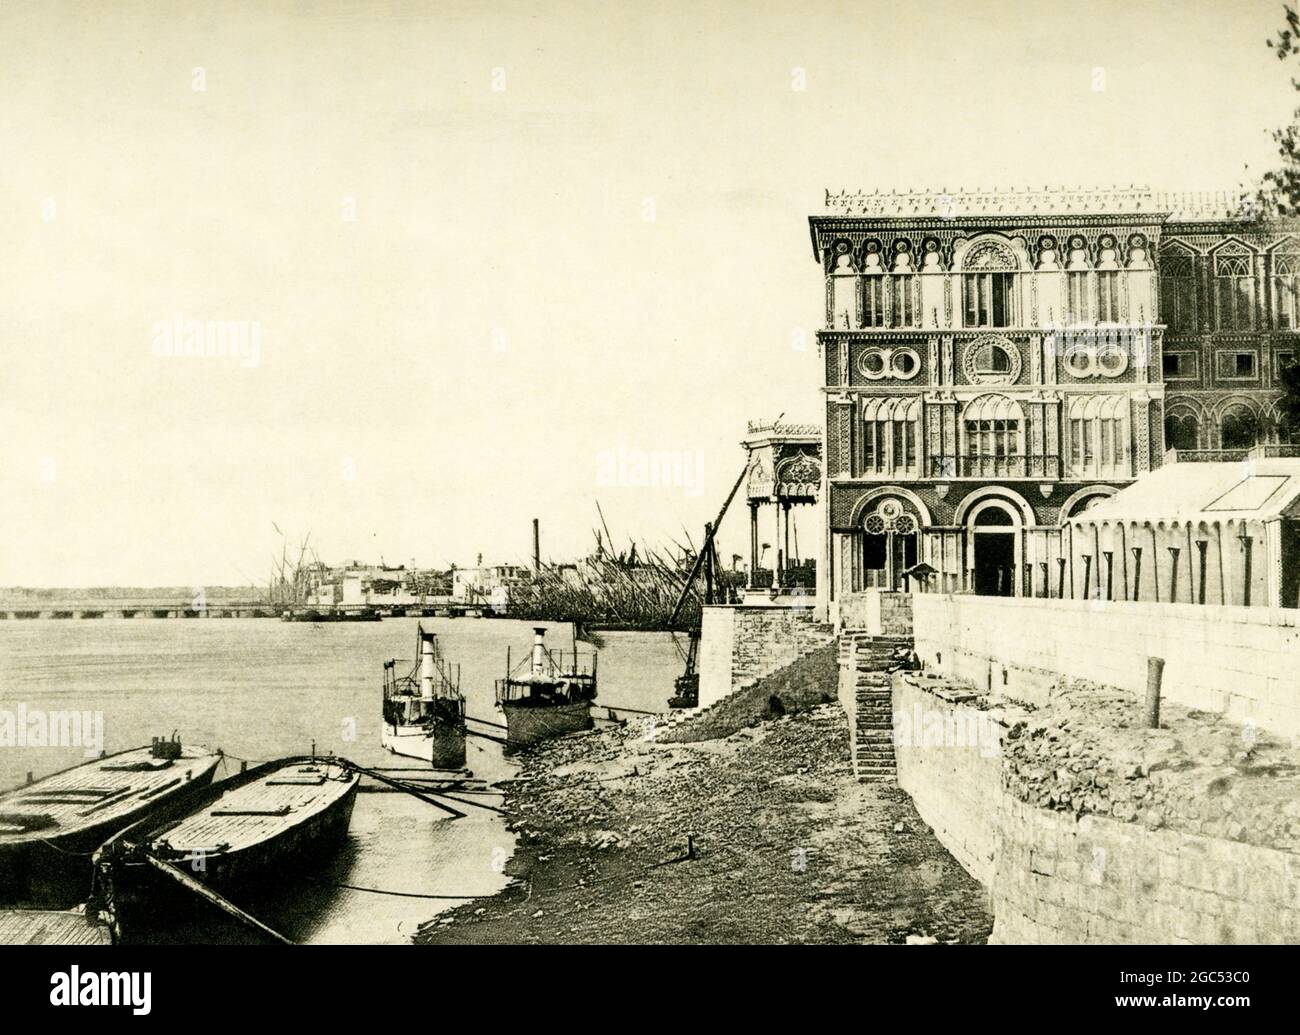 Die Bildunterschrift zu dieser Illustration von 1903 in Gaston Masperos Buch über die Geschichte Ägyptens lautet: „Khedive’s Palace at Bulak“. Khedive bezieht sich auf den Titel des Vizekönigs Ägyptens unter türkischer Herrschaft 1867–1914. 1886 wurde der Gezira Palace (heute Marriott Hotel) des Khedive auf der Insel errichtet, die heute als Zamalek bekannt ist, ein Abschnitt im heutigen Kairo. Vor dieser Zeit war die Insel einfach als Geziret Bulak oder Bulak Island bekannt, in Bezug auf den blühenden Flusshafen Bulak aus dem 18. Und 19. Jahrhundert, der sich am östlichen Ufer des Nils befindet. Stockfoto